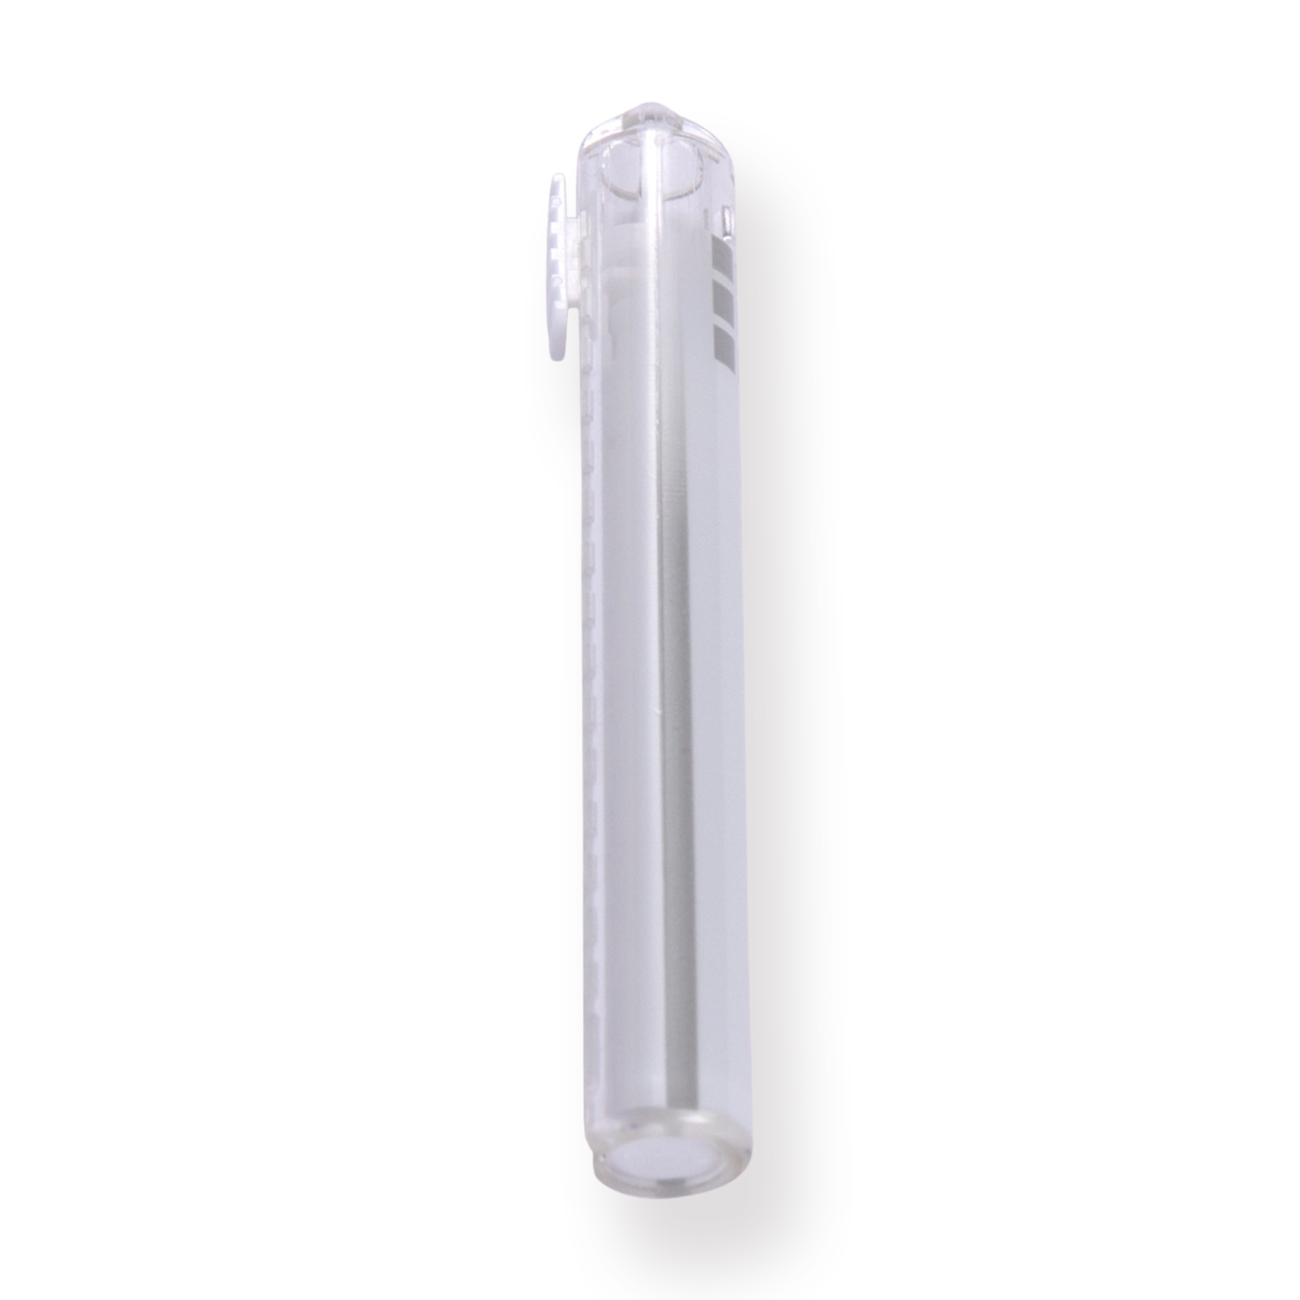 Pentel Borrador mini de alto polímero ZE82 - Blanco